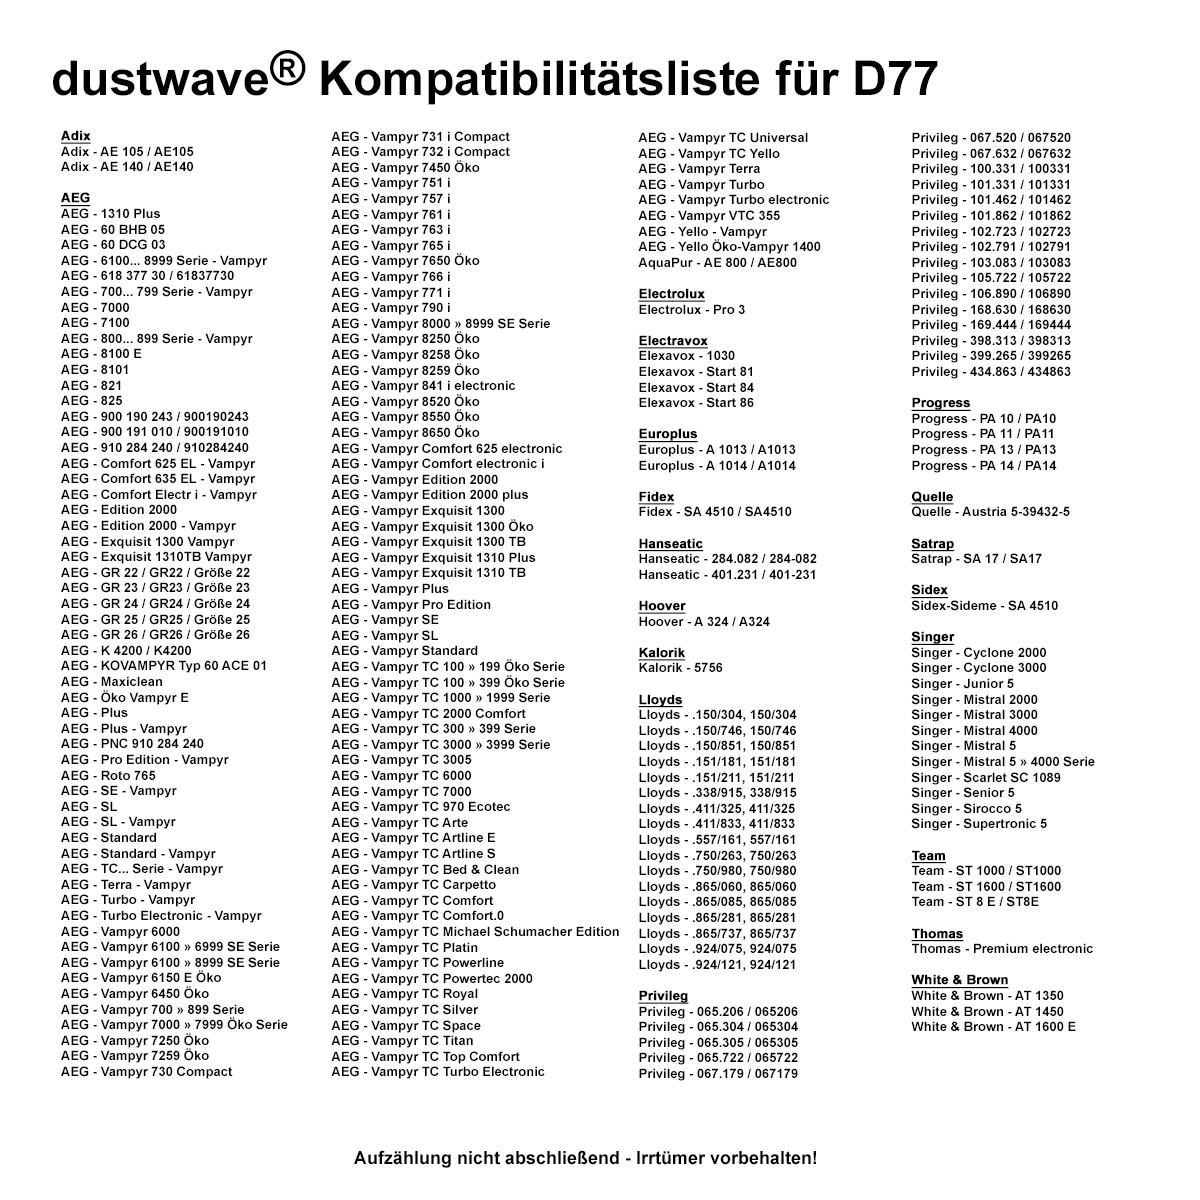 Dustwave® 10 Staubsaugerbeutel für AEG Vampyr 730 Electronic / Diamant - hocheffizient, mehrlagiges Mikrovlies mit Hygieneverschluss - Made in Germany